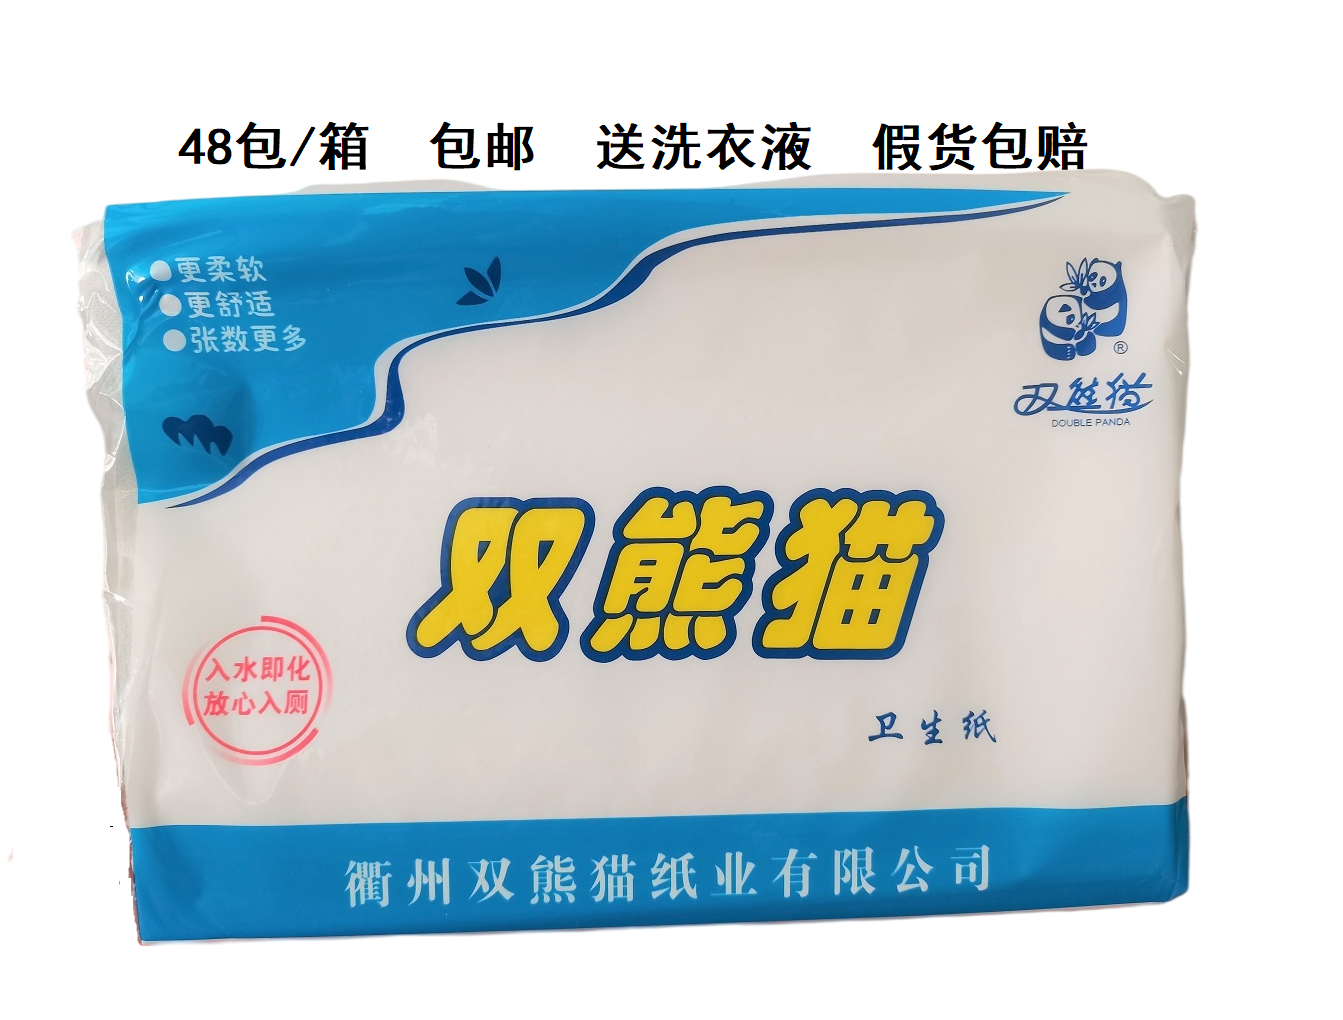 双熊猫皱纹卫生纸厕纸草纸 300克优质卫生纸48包/箱 包邮送垃圾袋